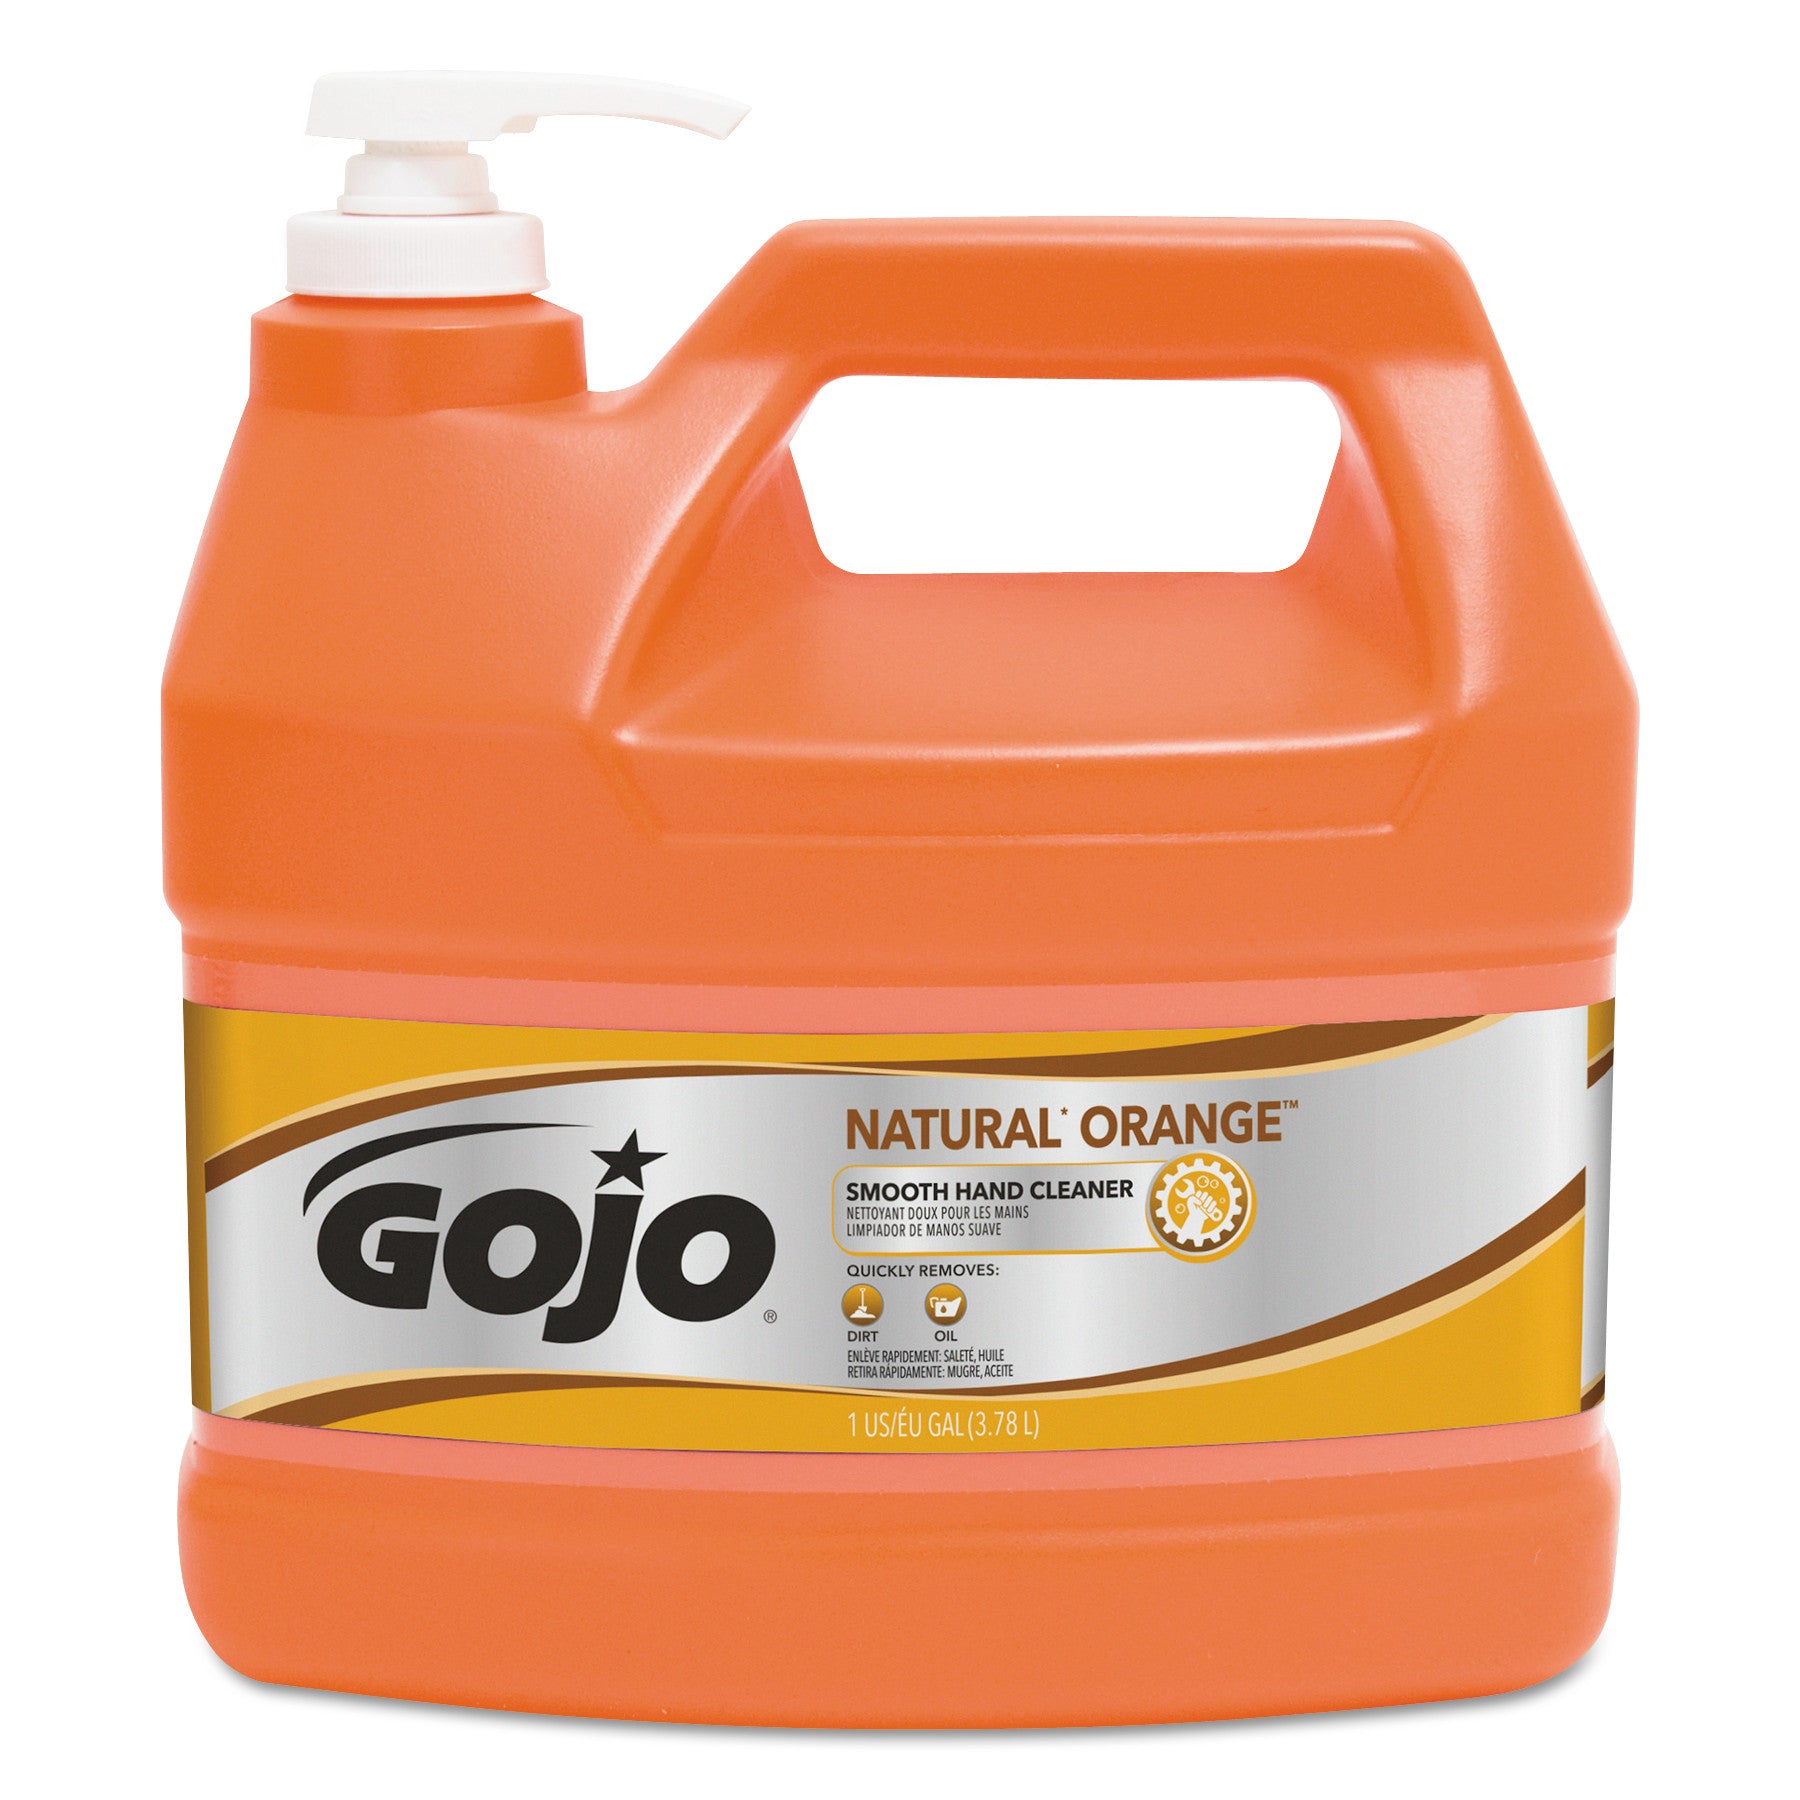 natural-orange-smooth-hand-cleaner-citrus-scent-1-gal-pump-dispenser-4-carton_goj094504 - 1